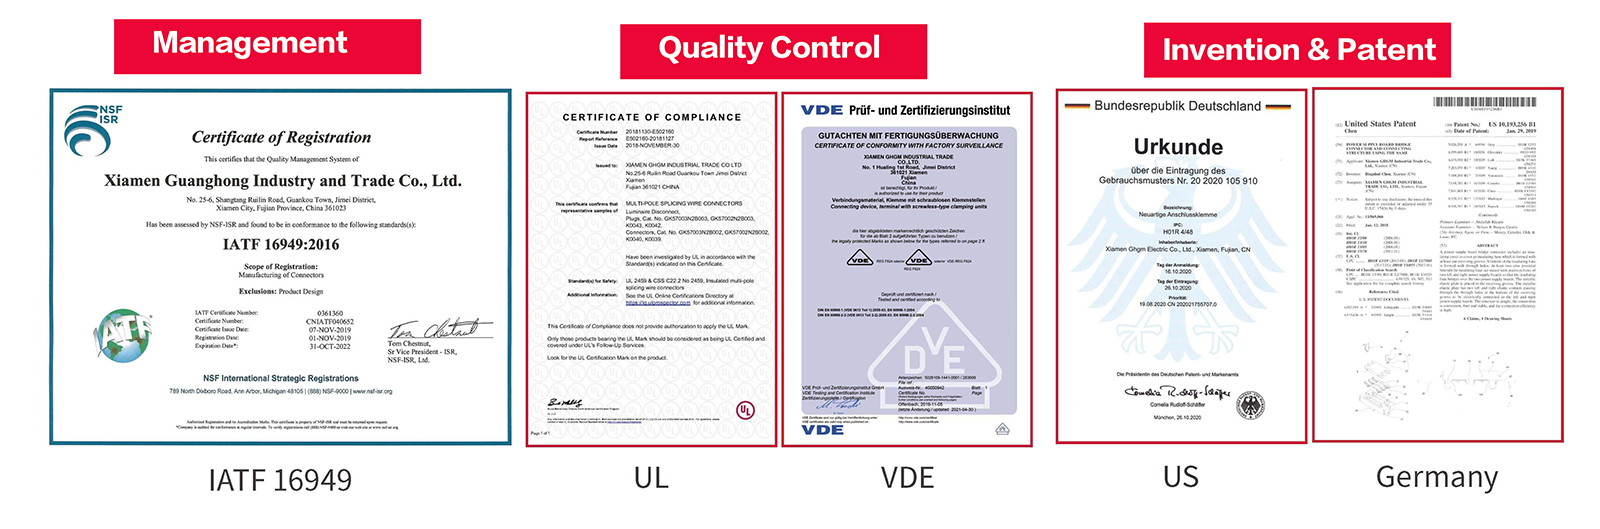 Certyfikat GHGM, kontrola jakości, wynalazek i patenty.jpg